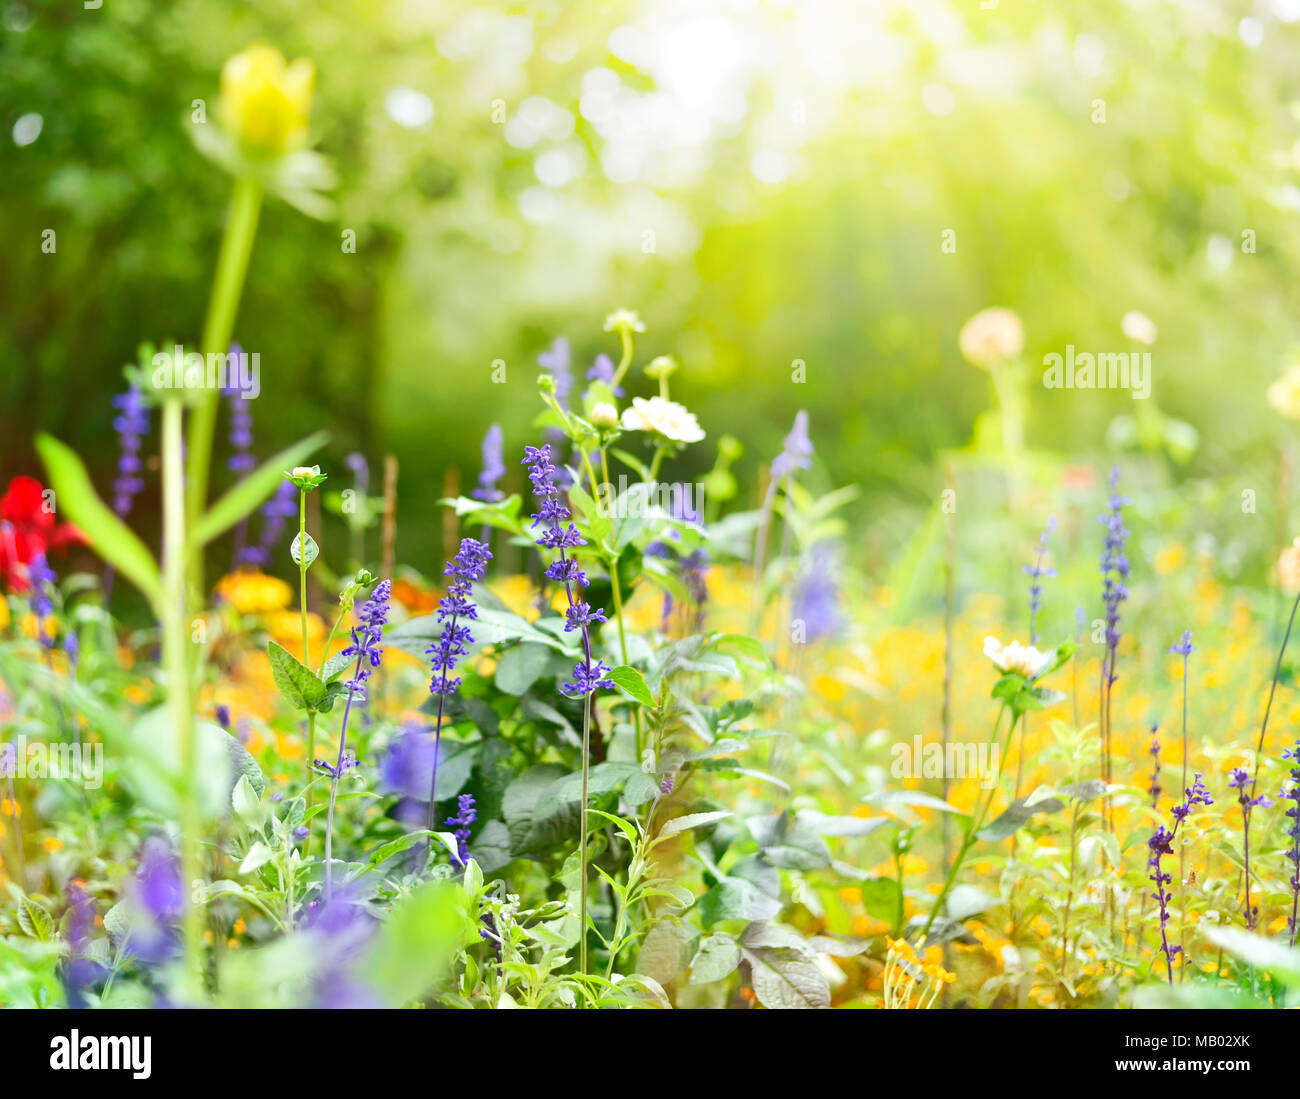 Blumenwiese im Frühjahr. Verschiedene Blüten mit selektiven Fokus. Frühling Hintergrund. Stockfoto